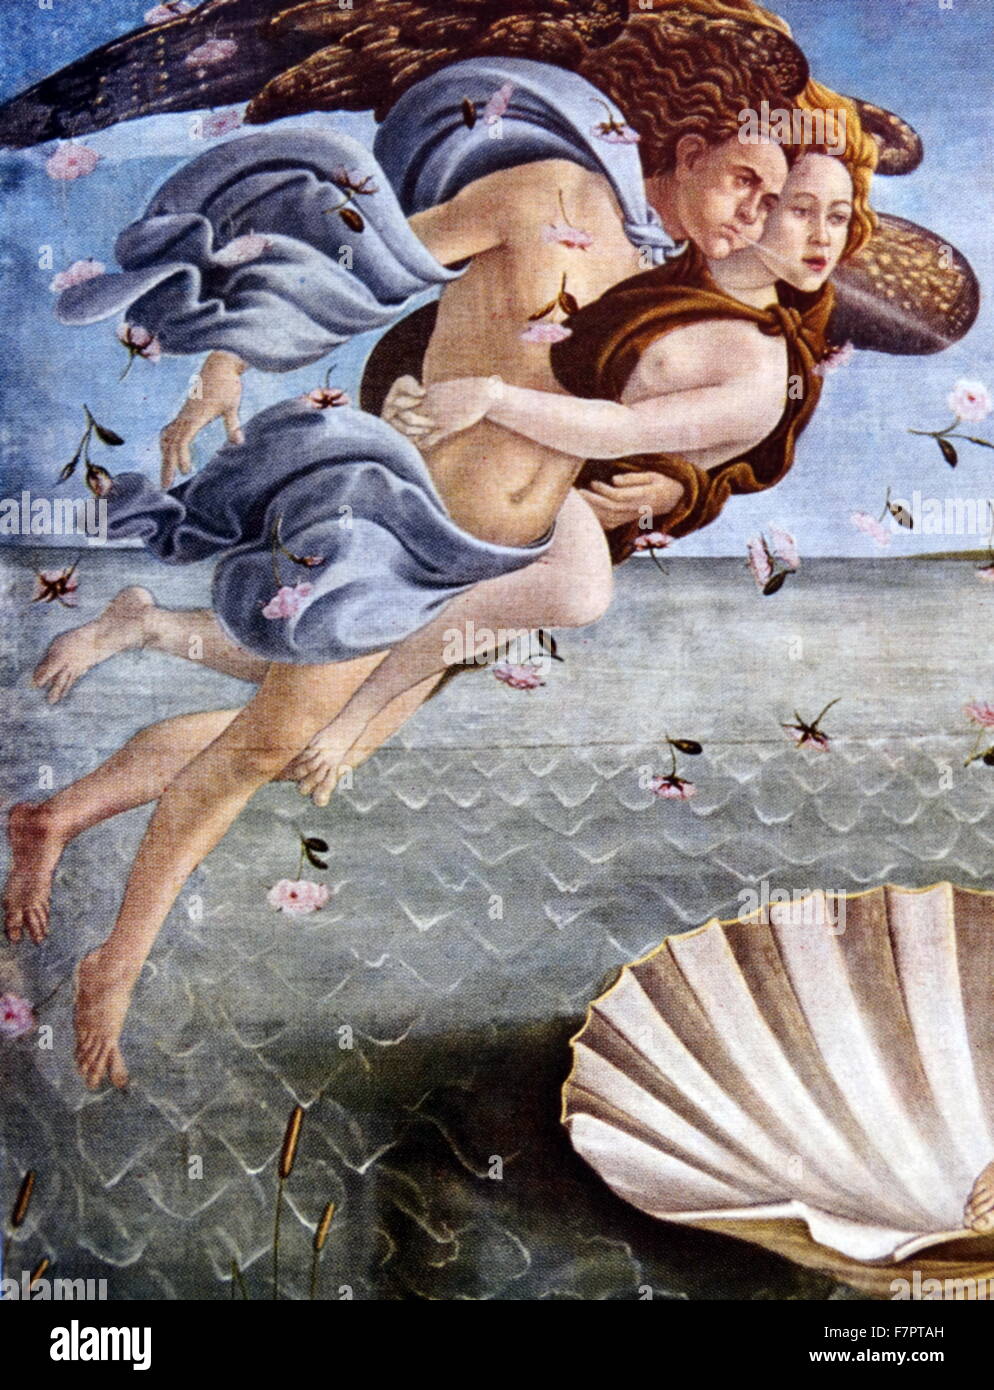 La Naissance de Vénus (détail);par Sandro Botticelli;peintre italien, vers 1445 - 1510. Il appartenait à la première Renaissance Florentine, sous le patronage de l'École de Lorenzo de' Medici. La Naissance de Vénus (Nascita di Venere) par Sandro Botticelli généralement considérées ont été peints dans le milieu des années 1480. Elle représente la déesse Vénus, ayant émergé de la mer comme une femme adulte, arrivant à la côte. Banque D'Images